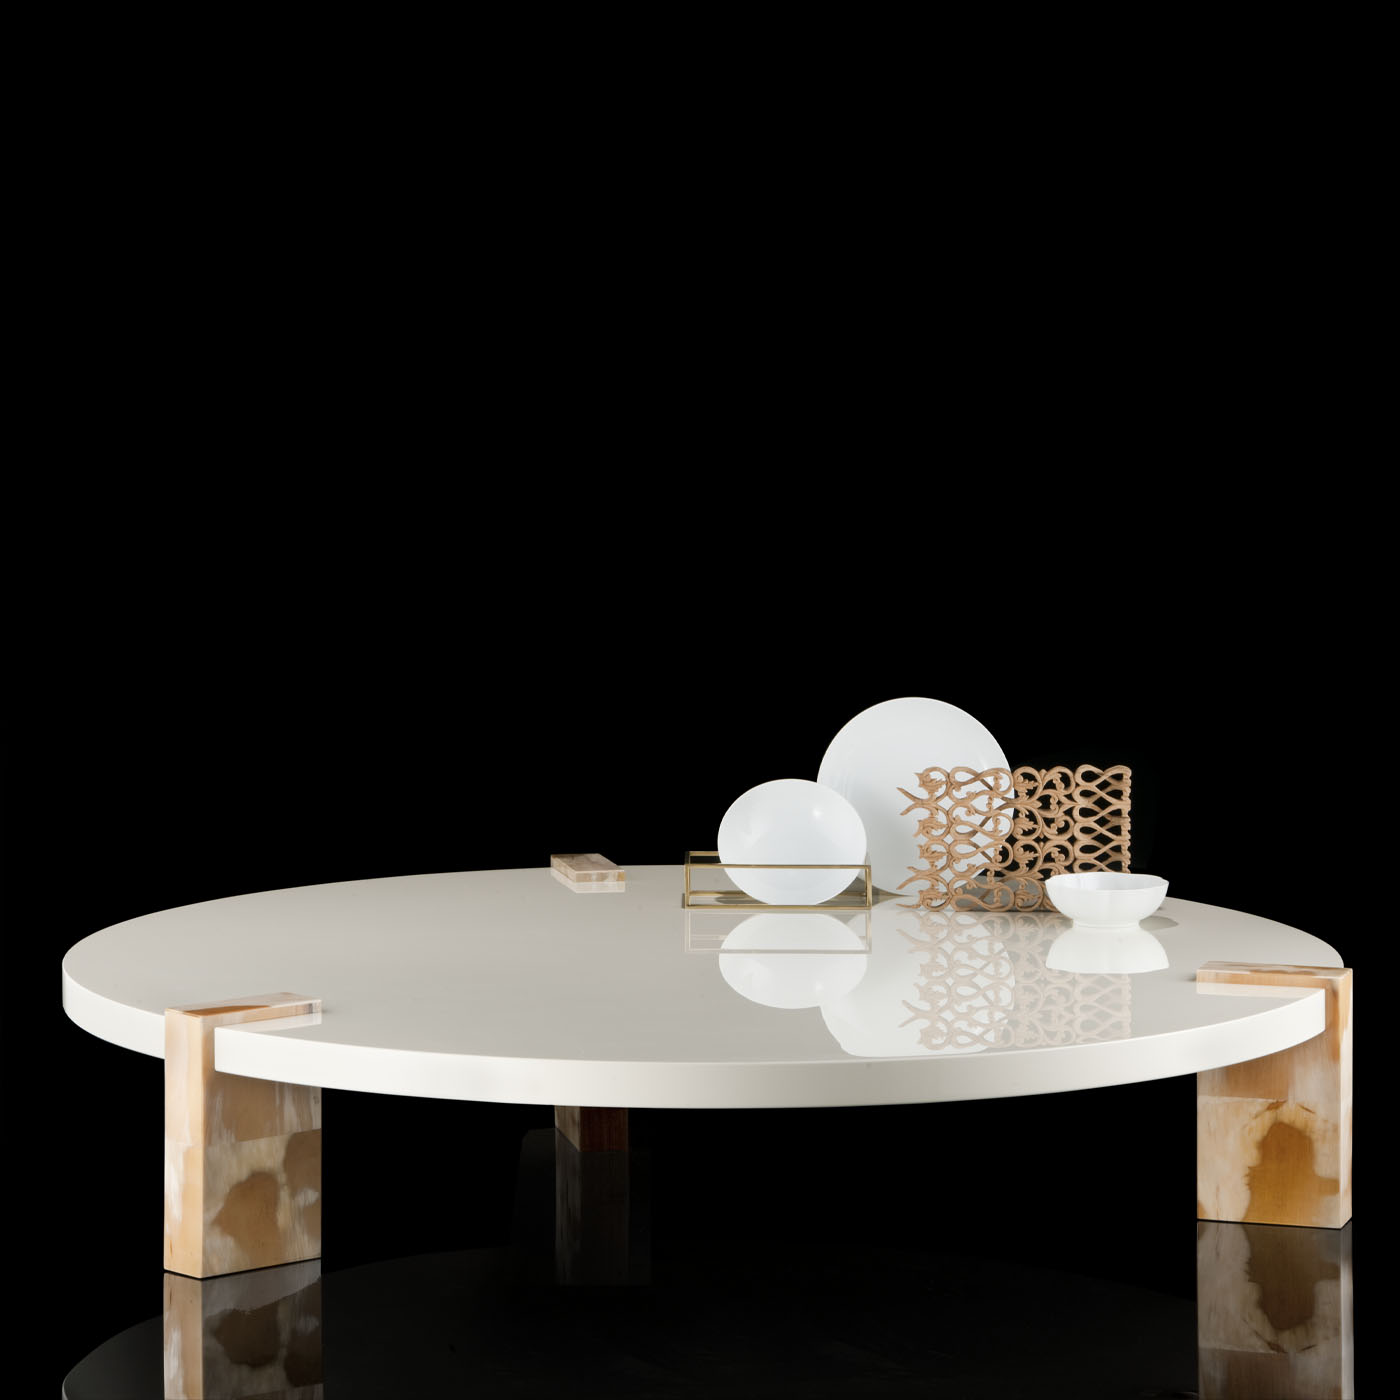 Tavoli e consolle - Paestum tavolo basso in legno laccato avorio - ambientata - Arcahorn